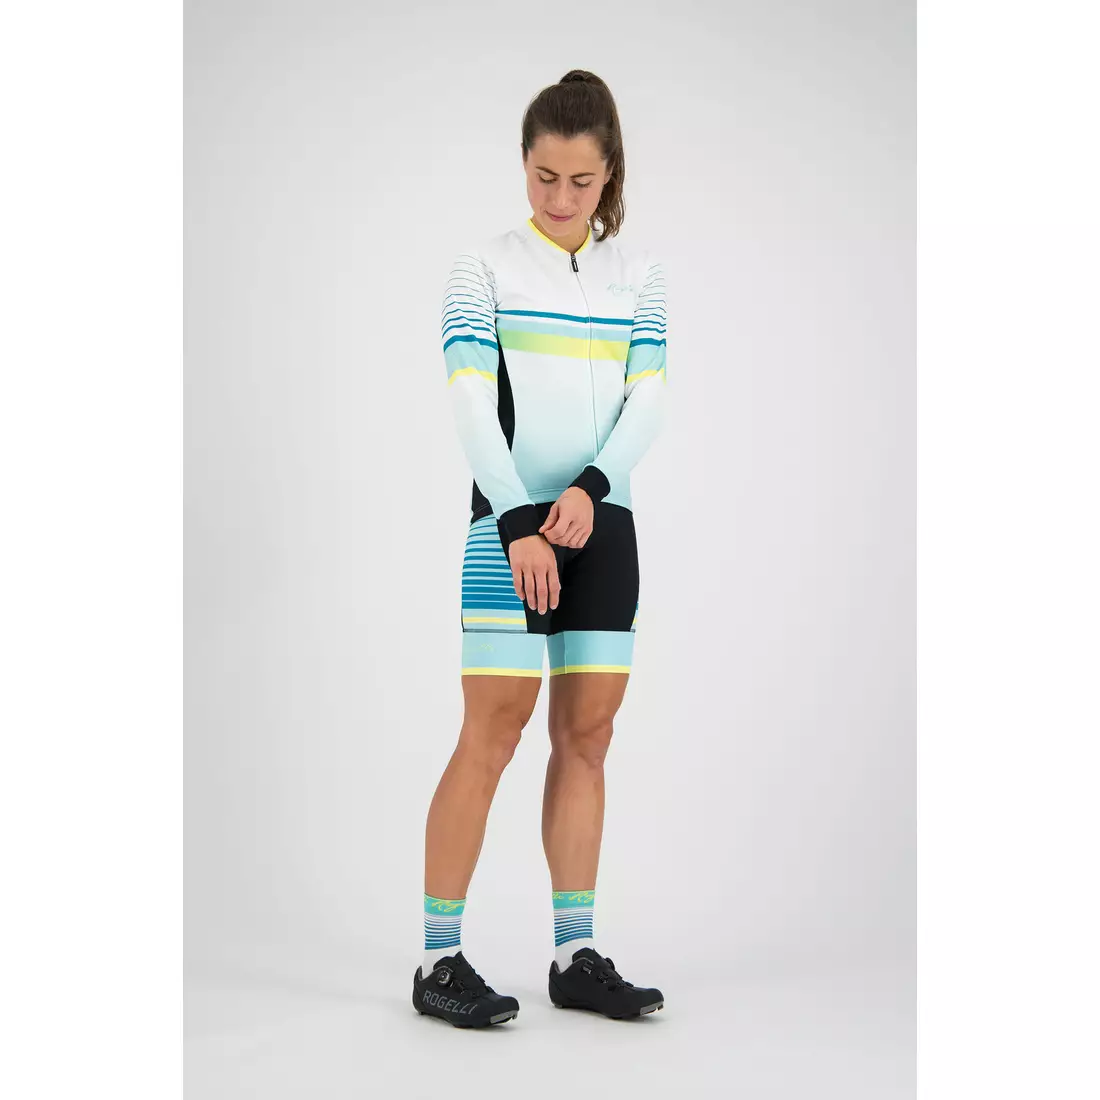 Rogelli Impress 010.193 Women bicycle sweatshirt Turquoise/Yellow